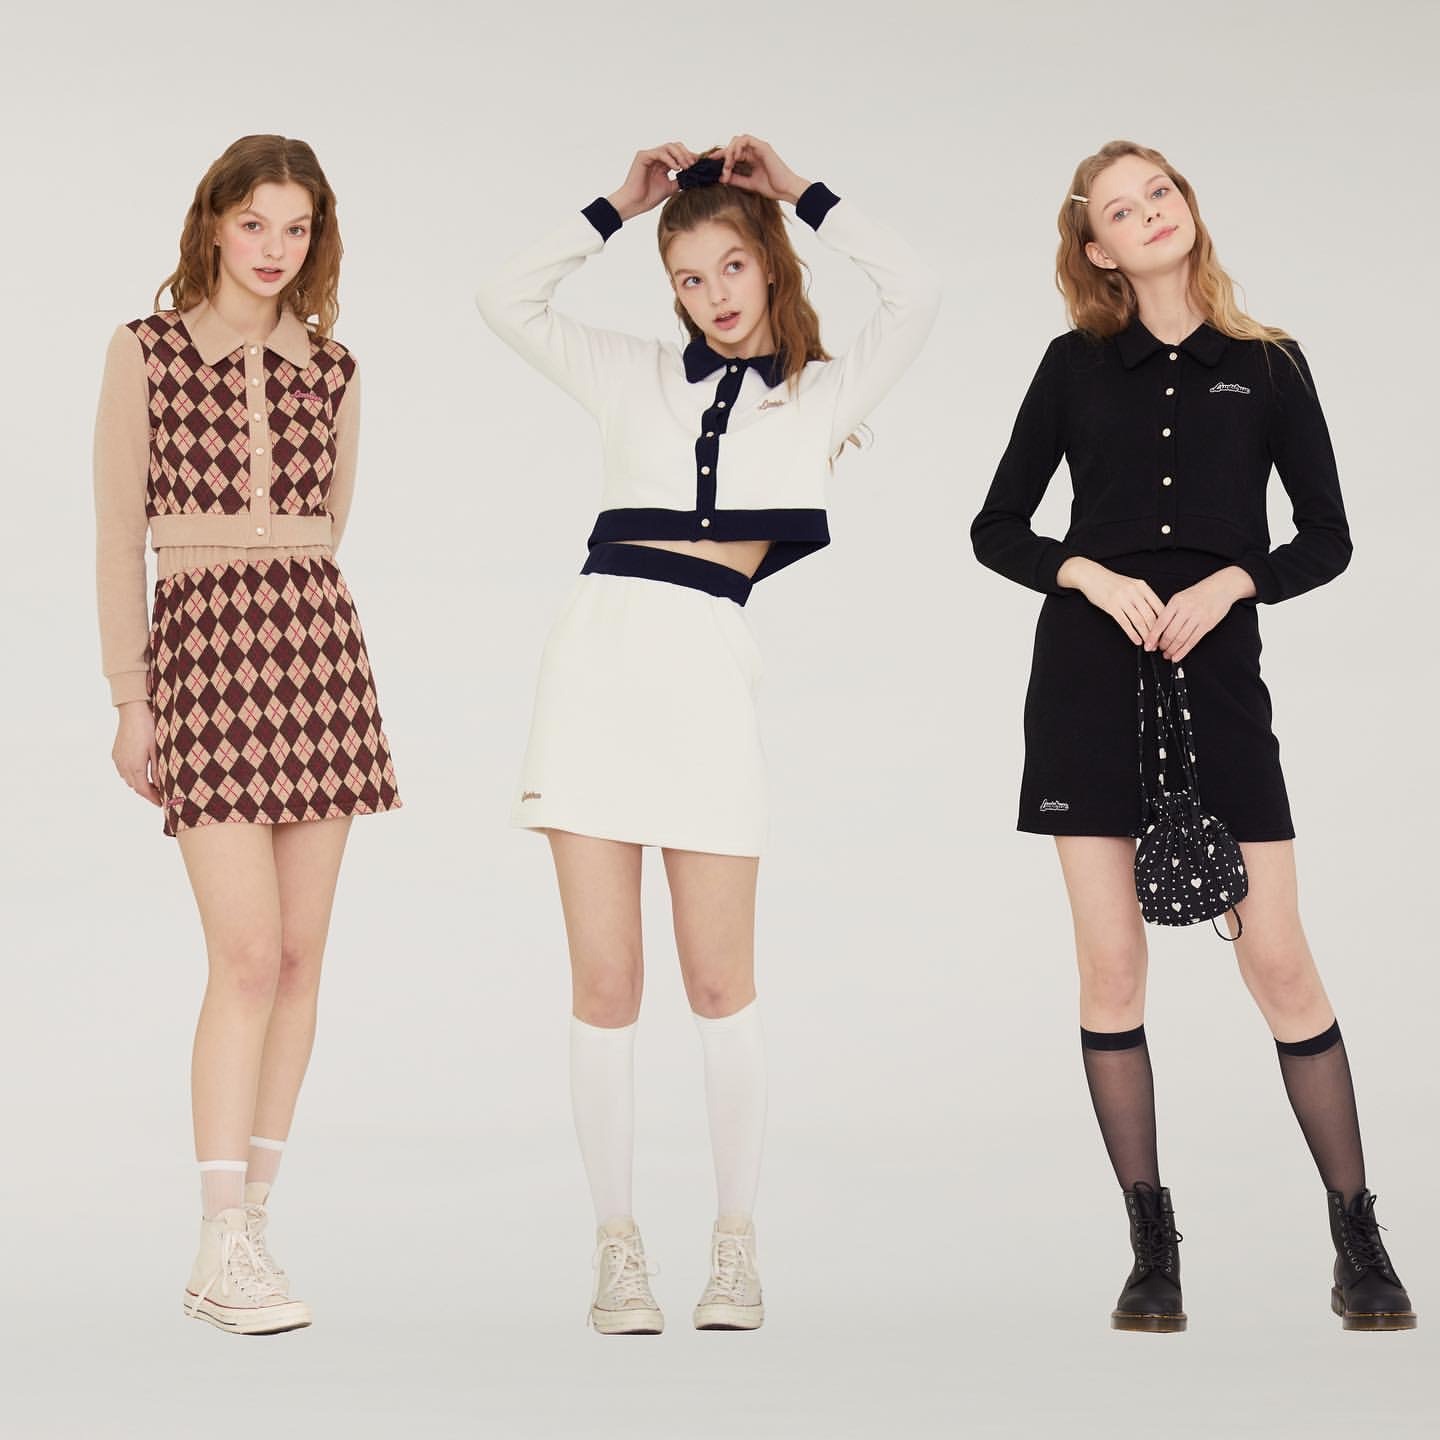 Blackpink ブラックピンク が着用する大人気韓国ファッションブランド Top3を発表